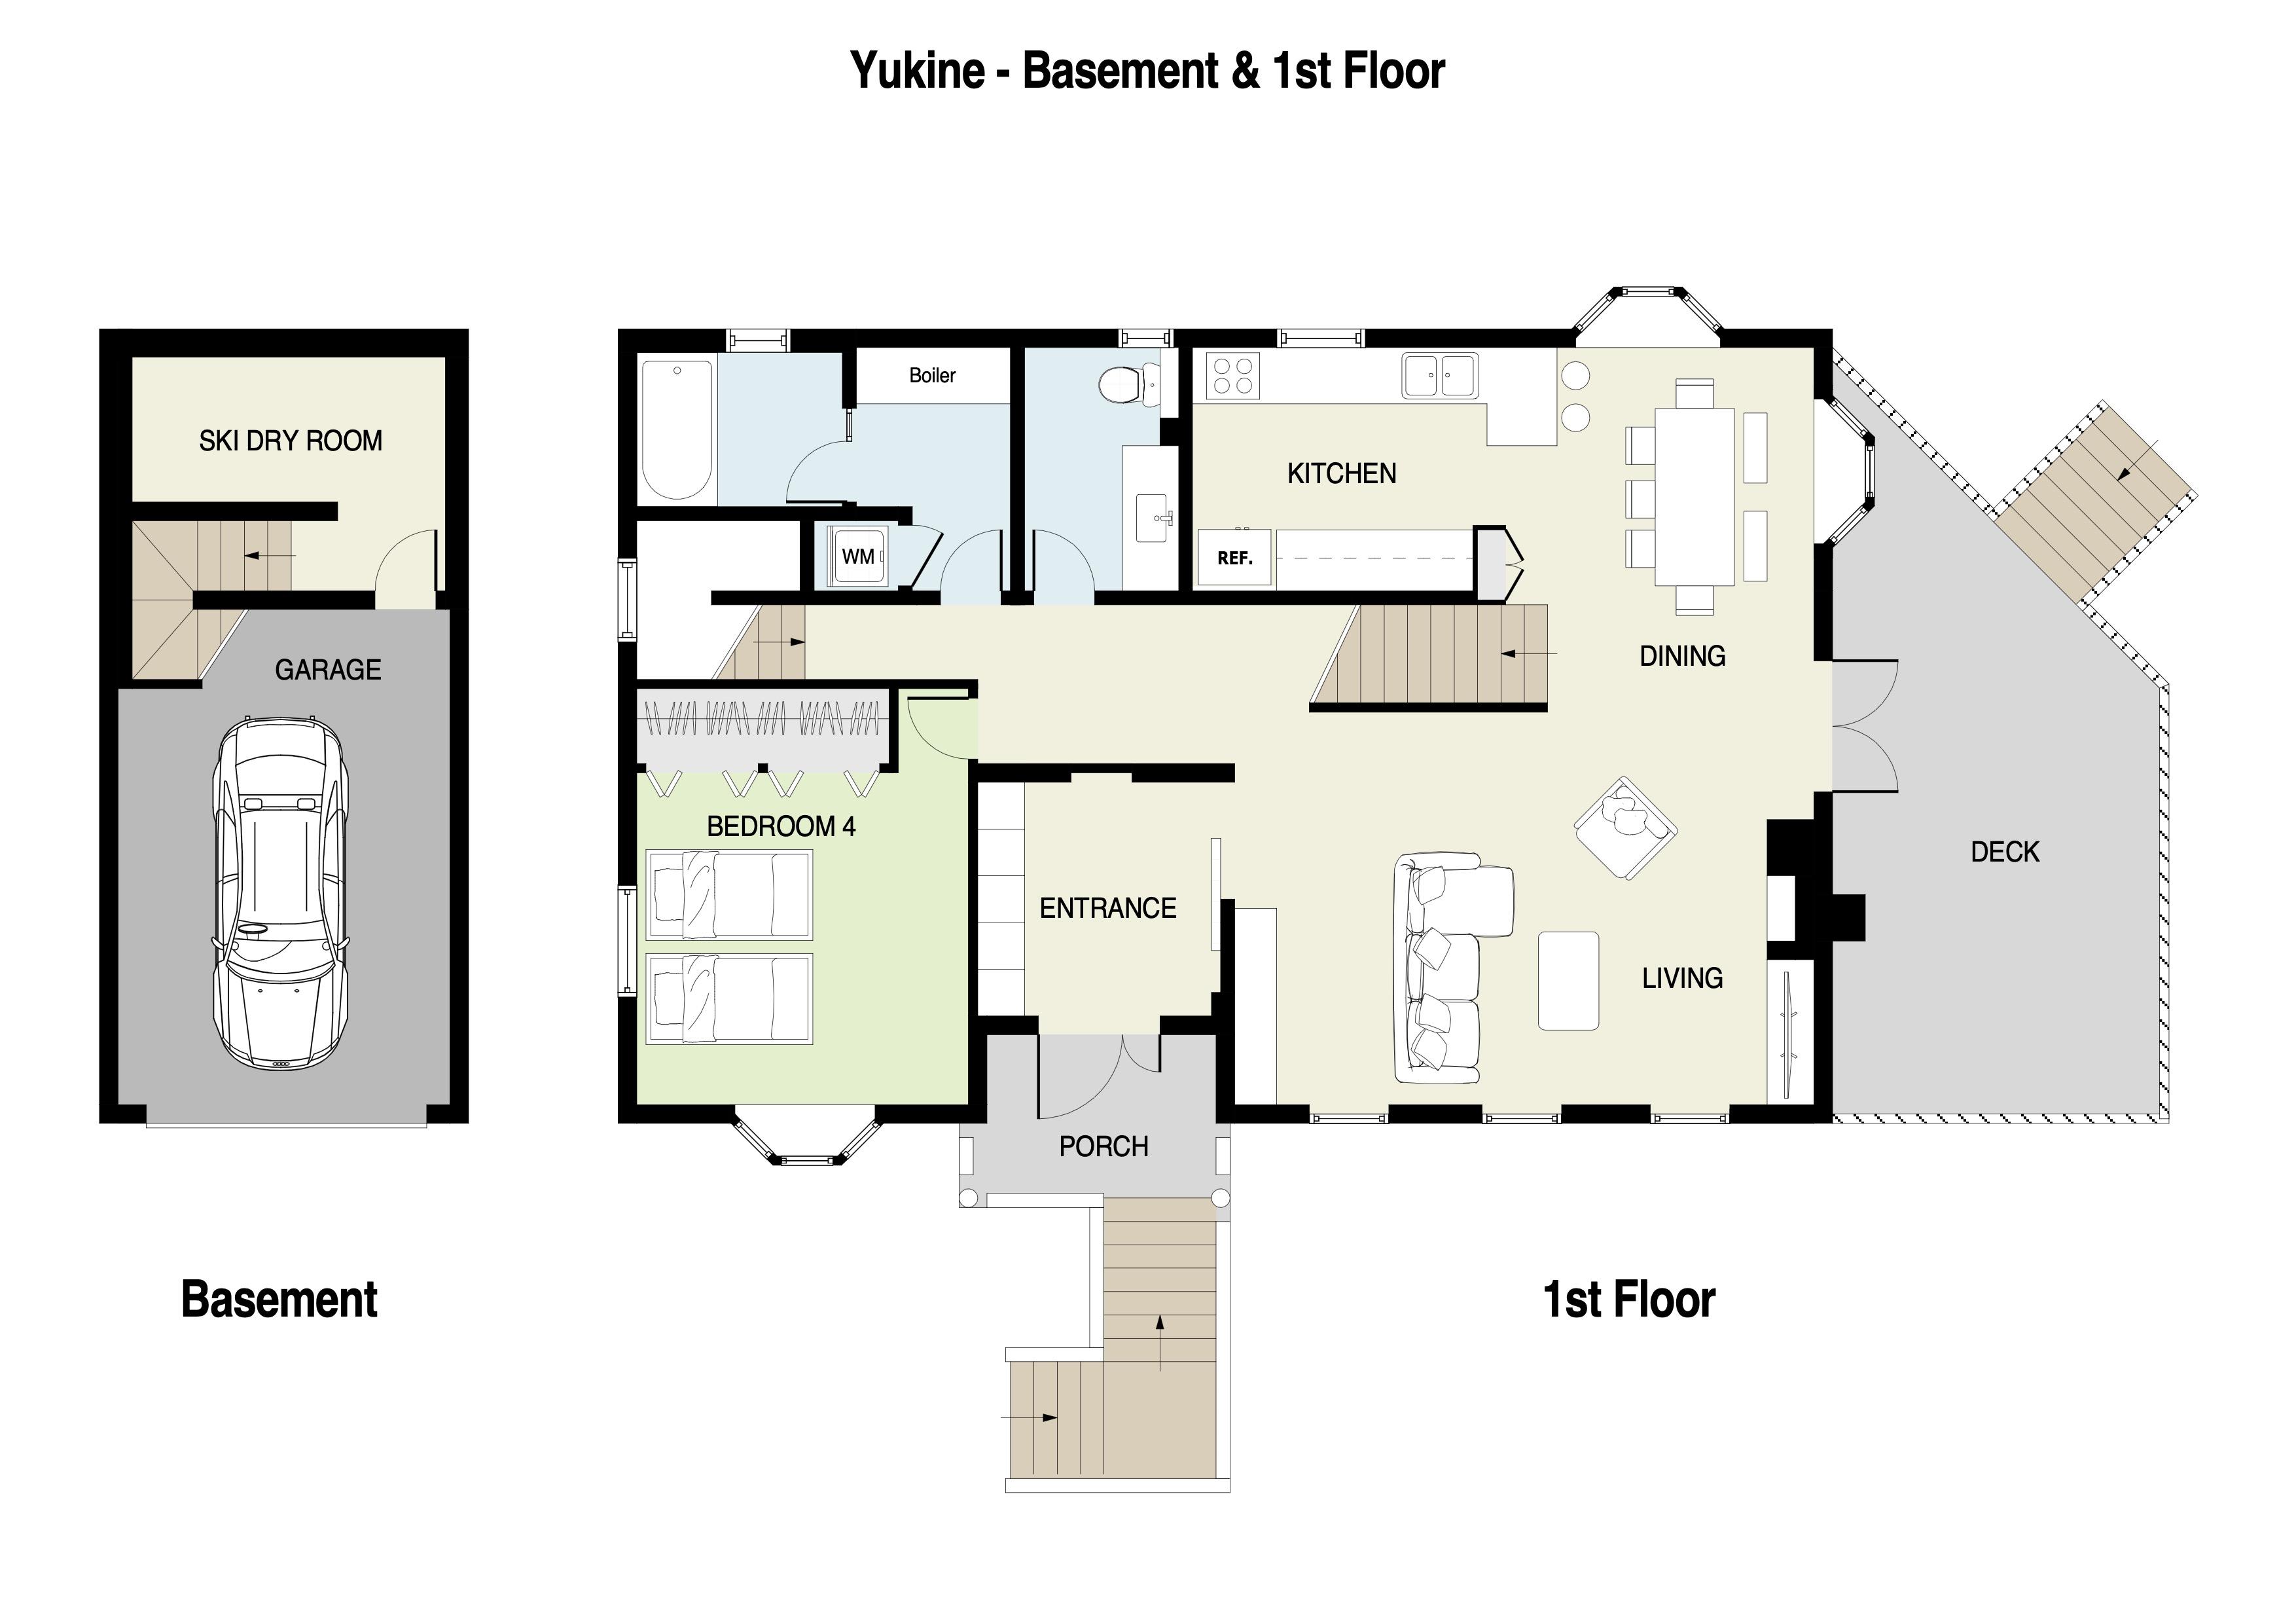 Yukine 1st floor plans